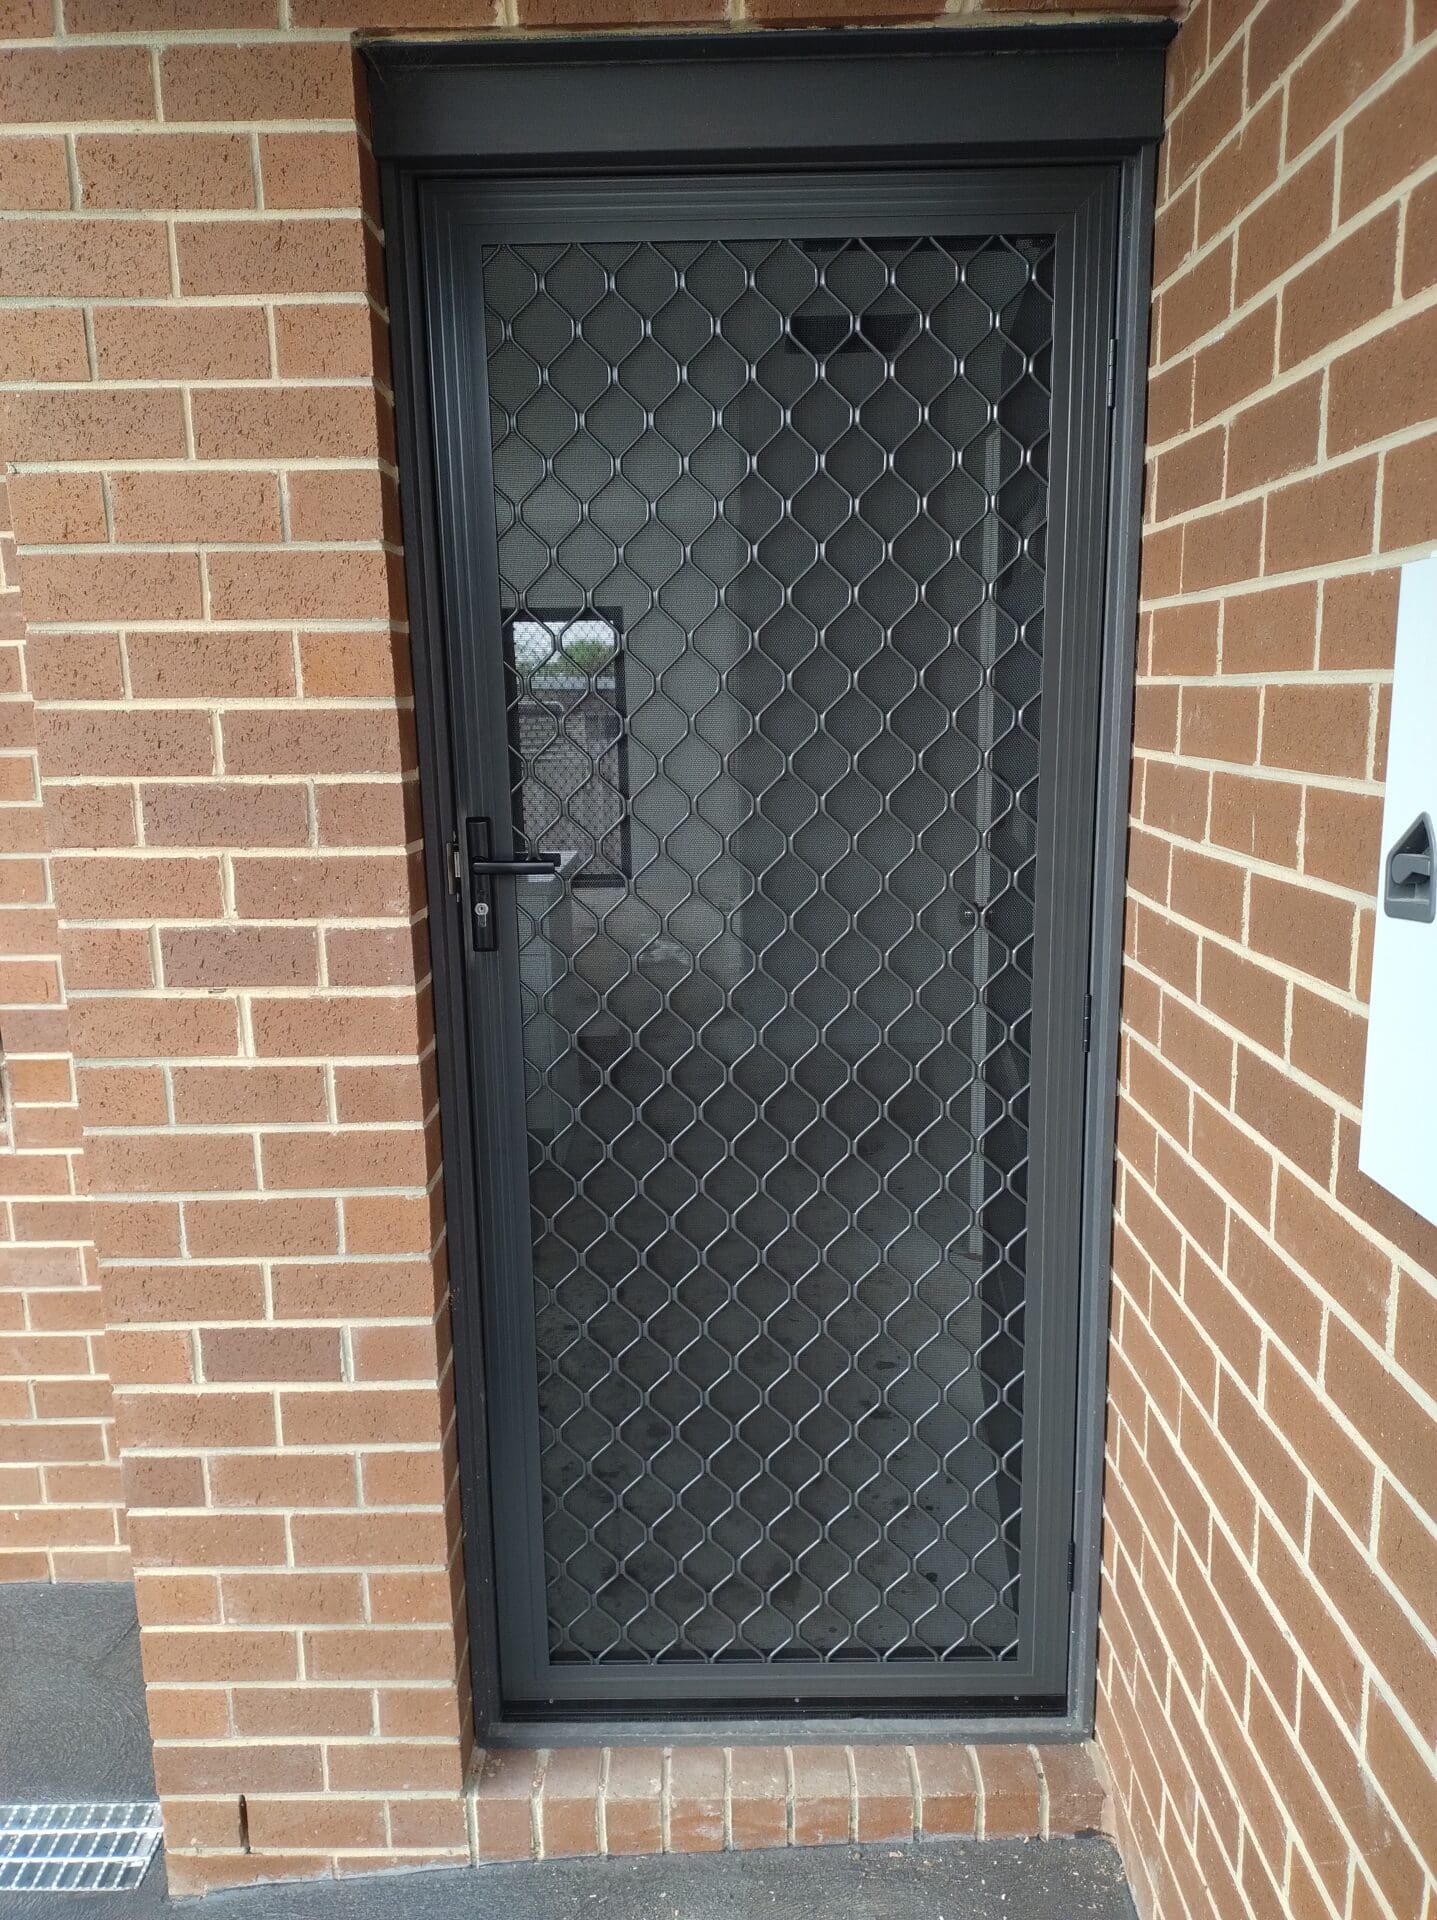 Entry security door